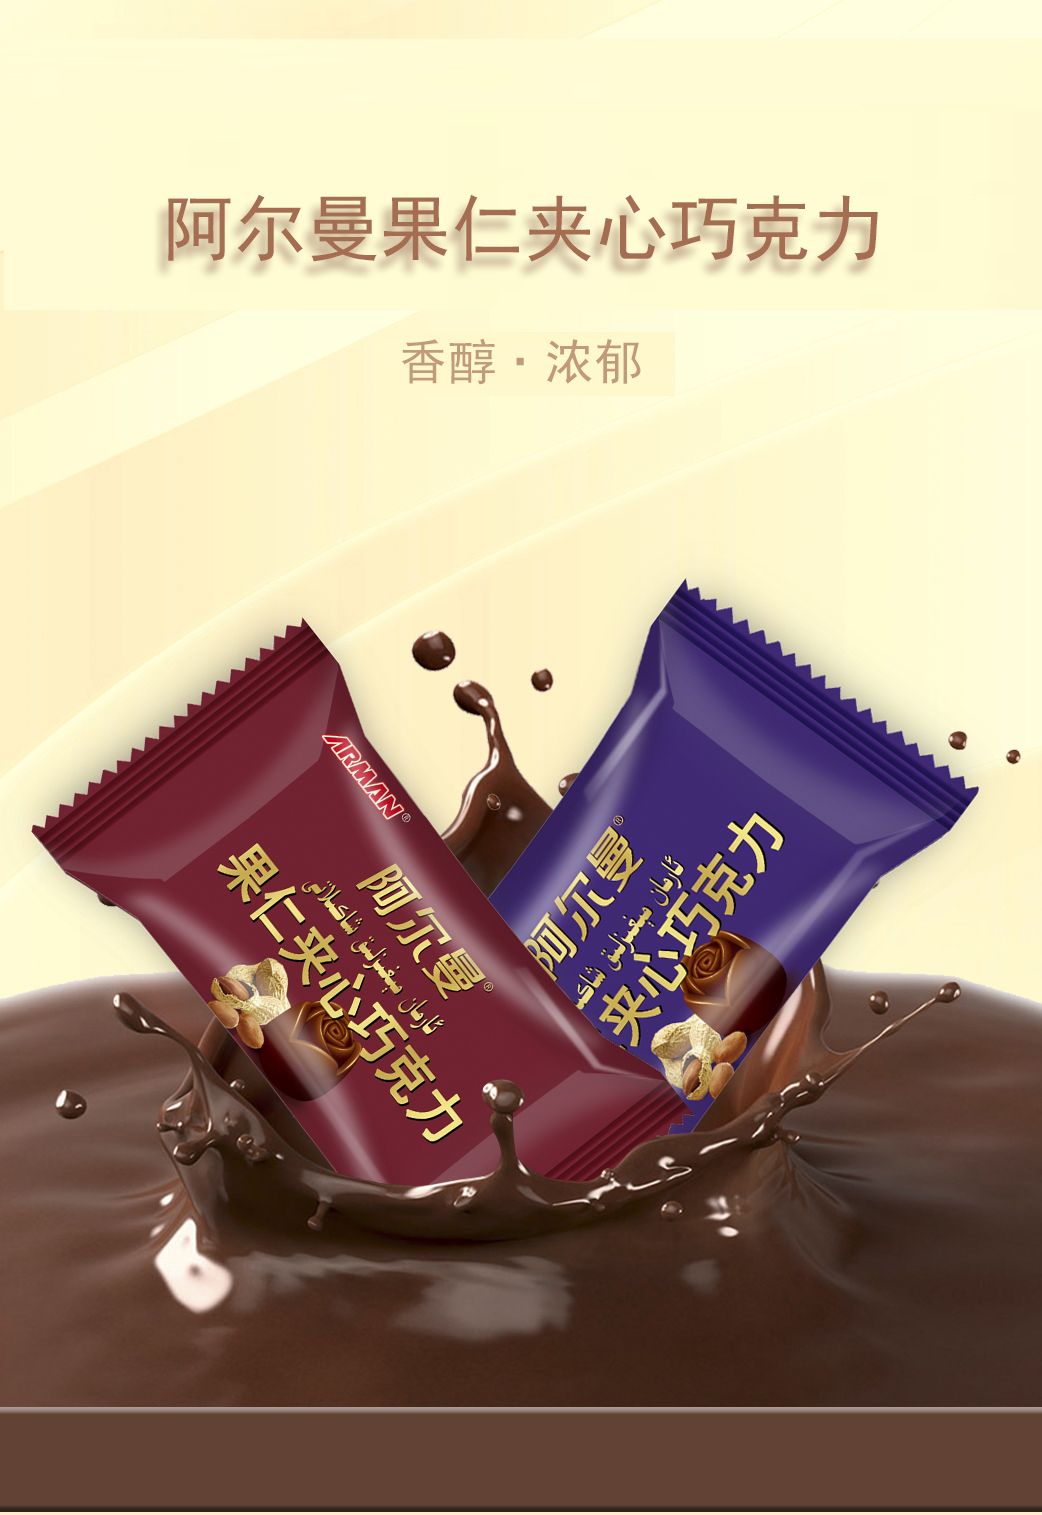 爱乐芬威化巧克力3 - 新疆阿尔曼食品集团有限责任公司